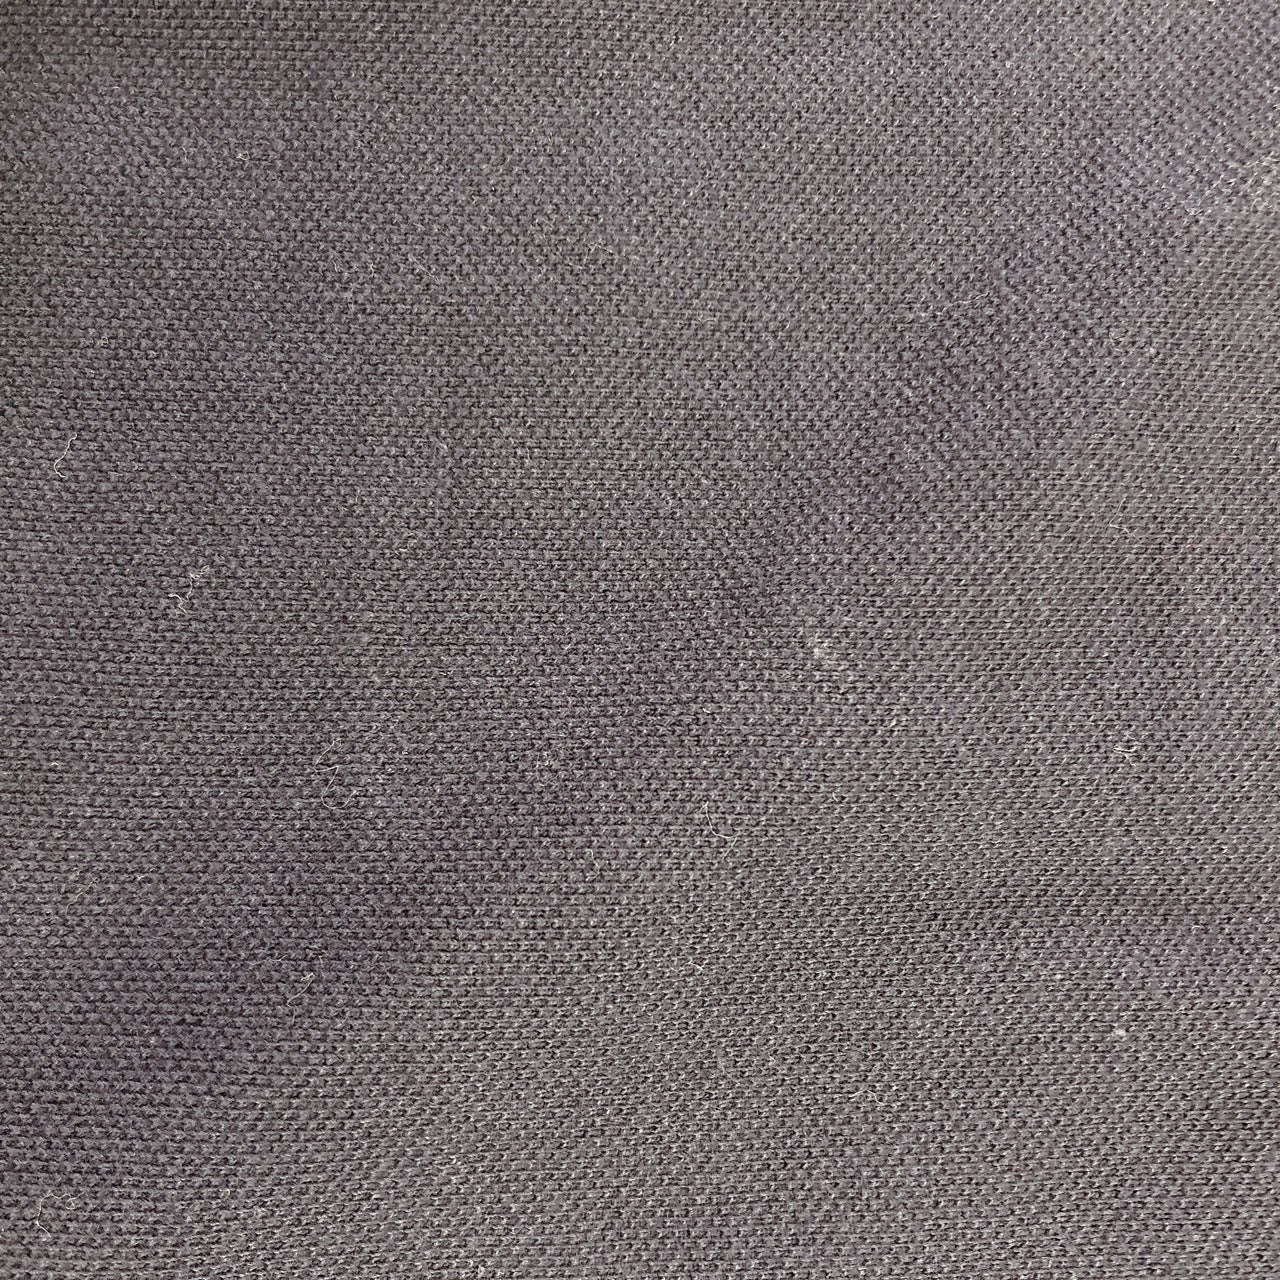 【27947】 ポロシャツ カットソー ネイビー サイズS相当 トップス 刺繍 非学校法人鈴木学院 襟付きポロシャツ レア シンプル 夏 メンズ